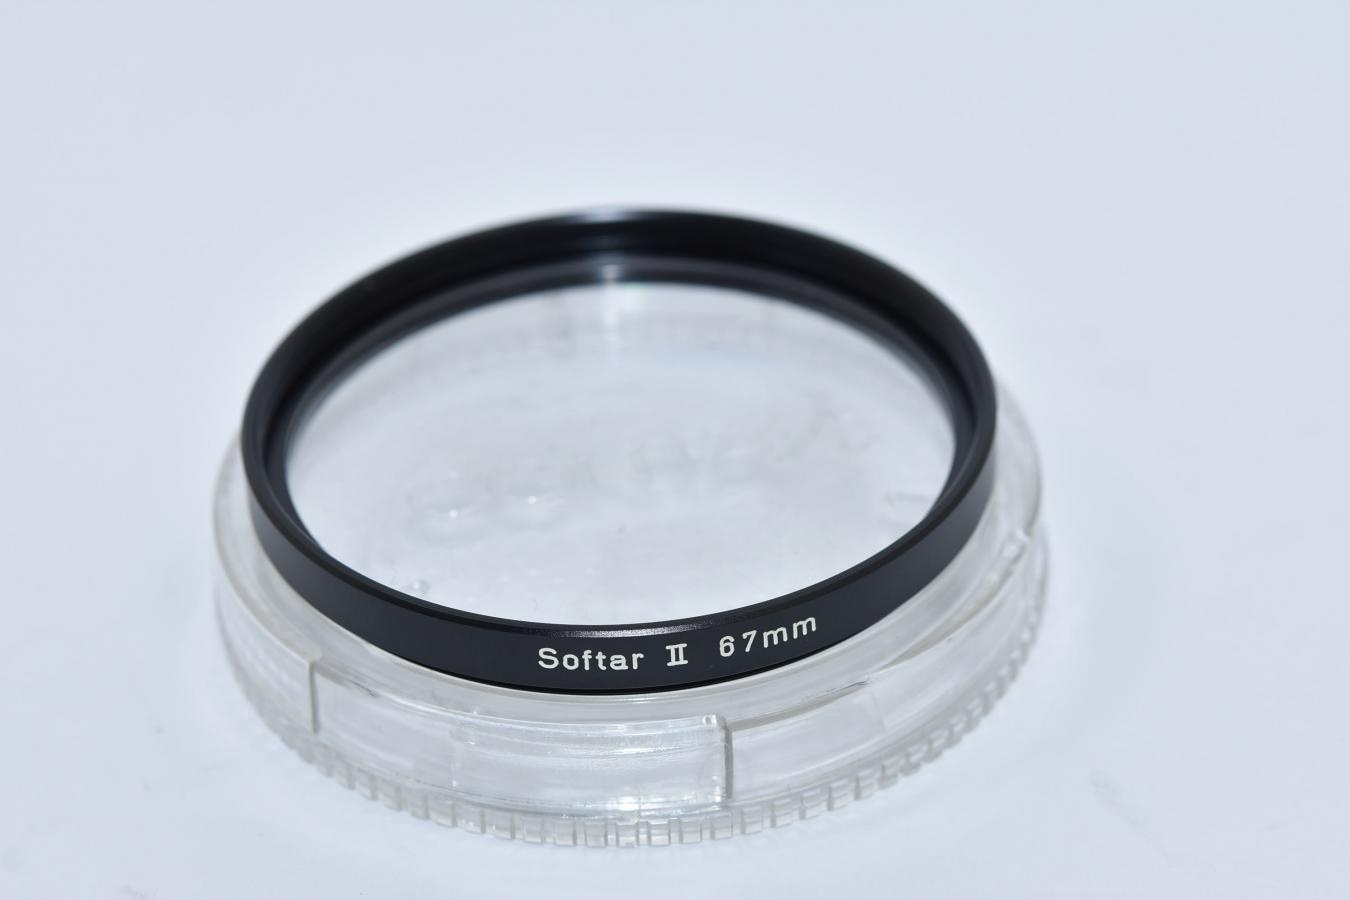 【希 少】 CONTAX Carl Zeiss West Germany 67mm Softar II Filter